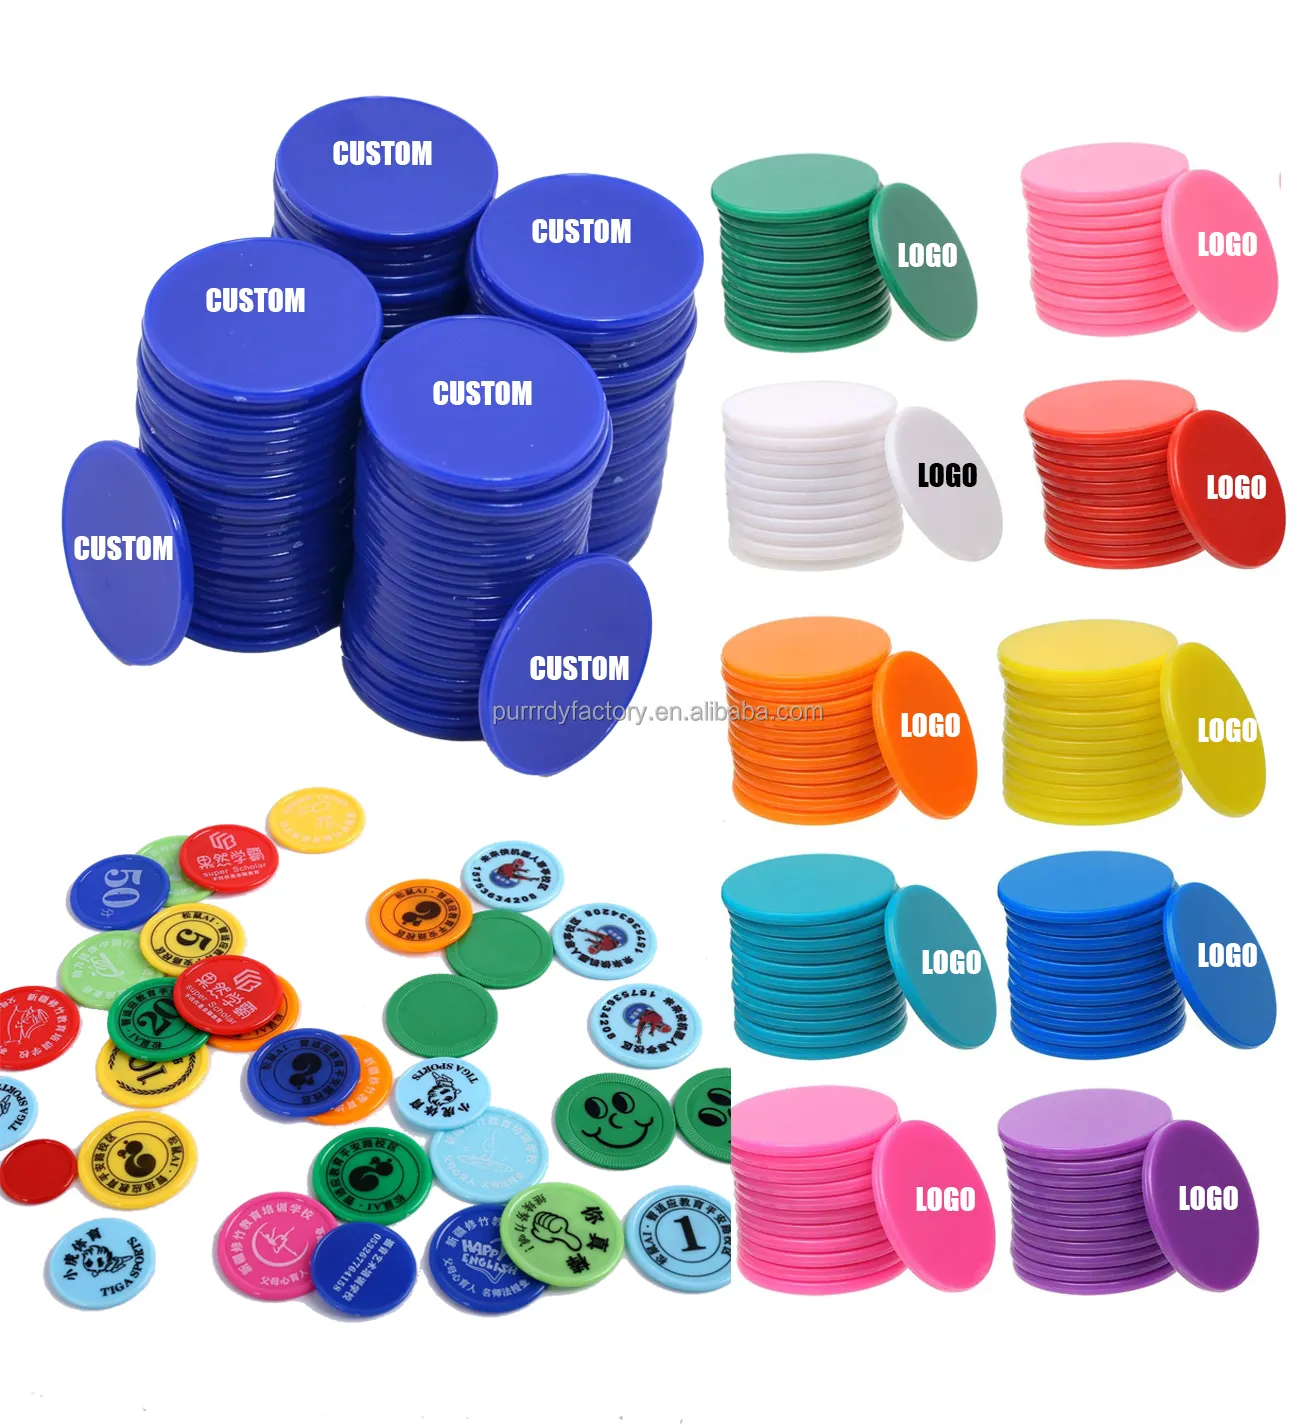 Logo kustom putaran kecil konter pembelajaran plastik disk Chip menghitung penanda cakram untuk praktek matematika Chip Poker Token permainan